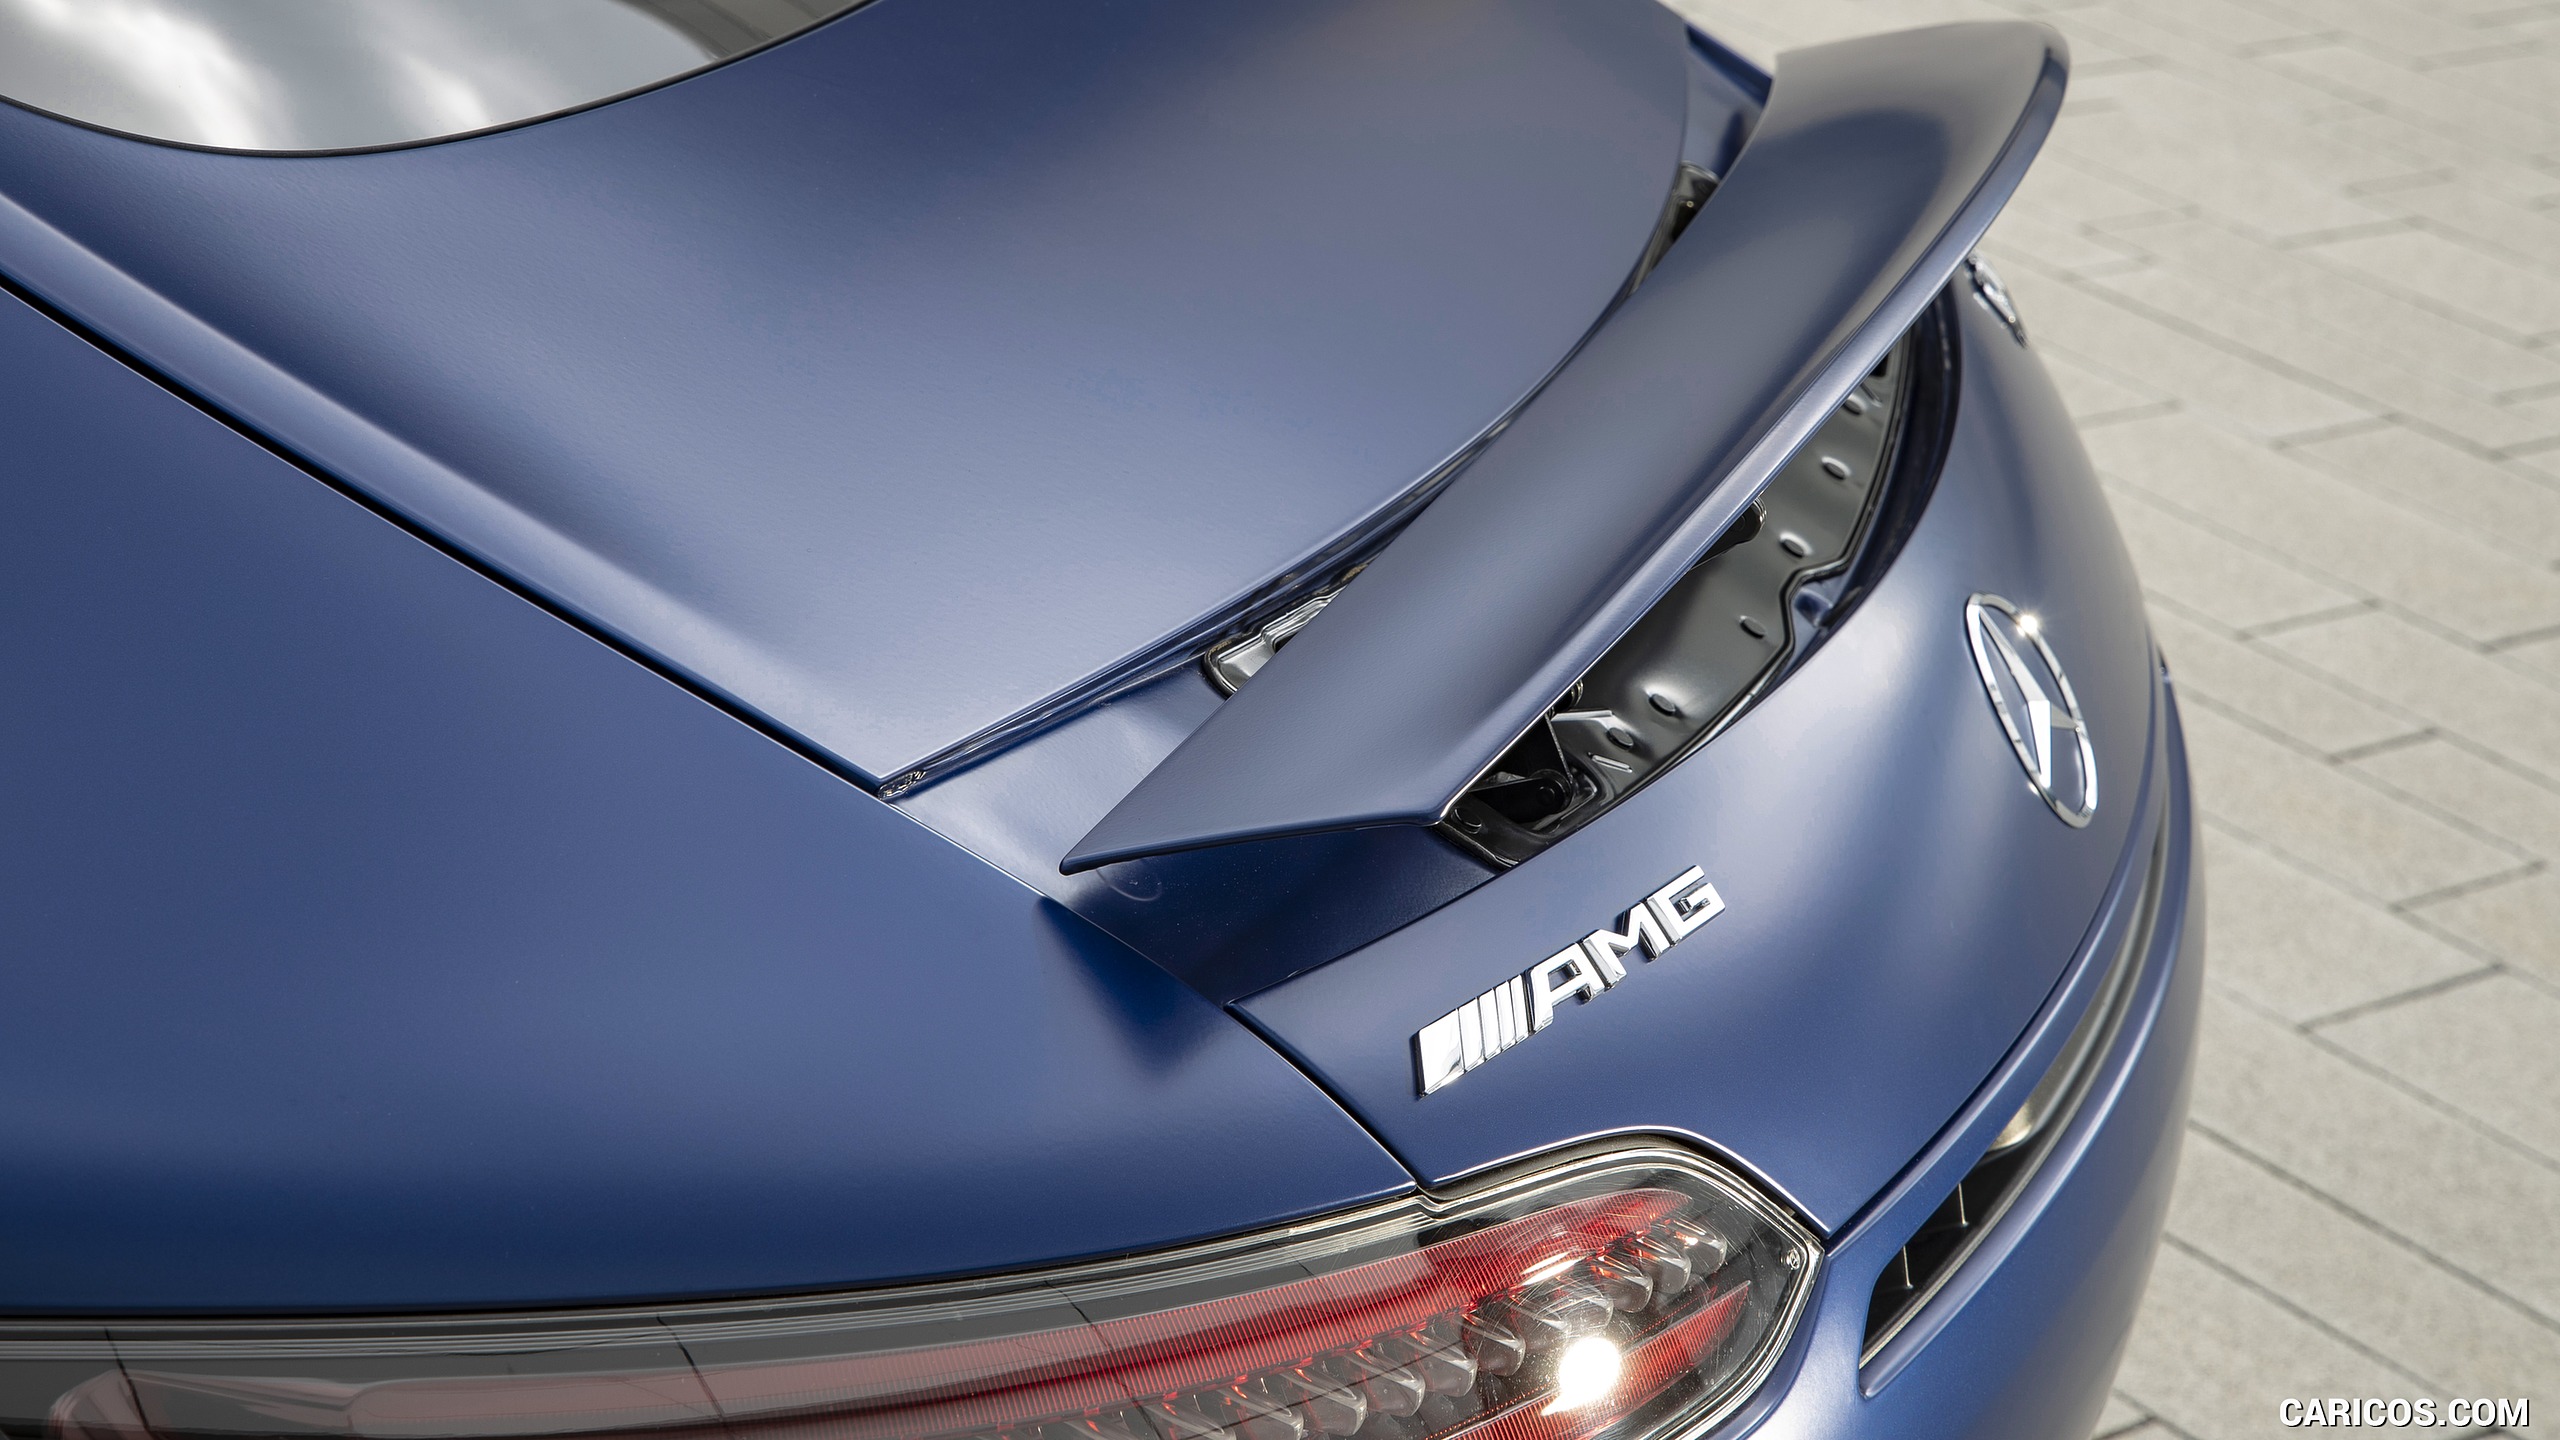 2020 Mercedes-AMG C Coupe (Color: Designo Brilliant Blue Magno), #117 of 328